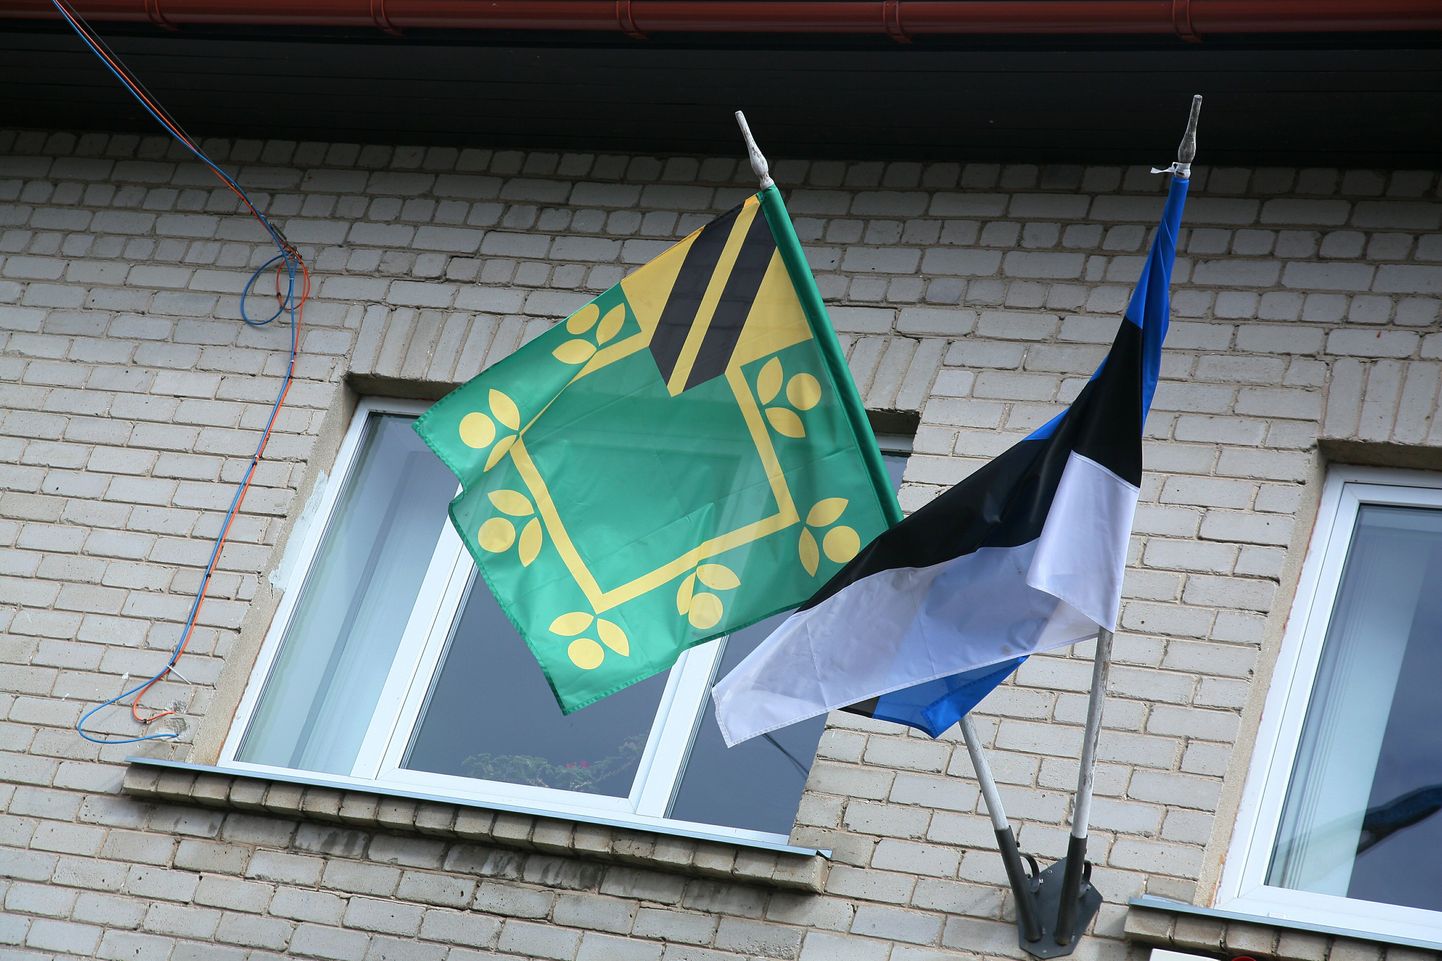 Lavassaare valla ja Eesti lipp.